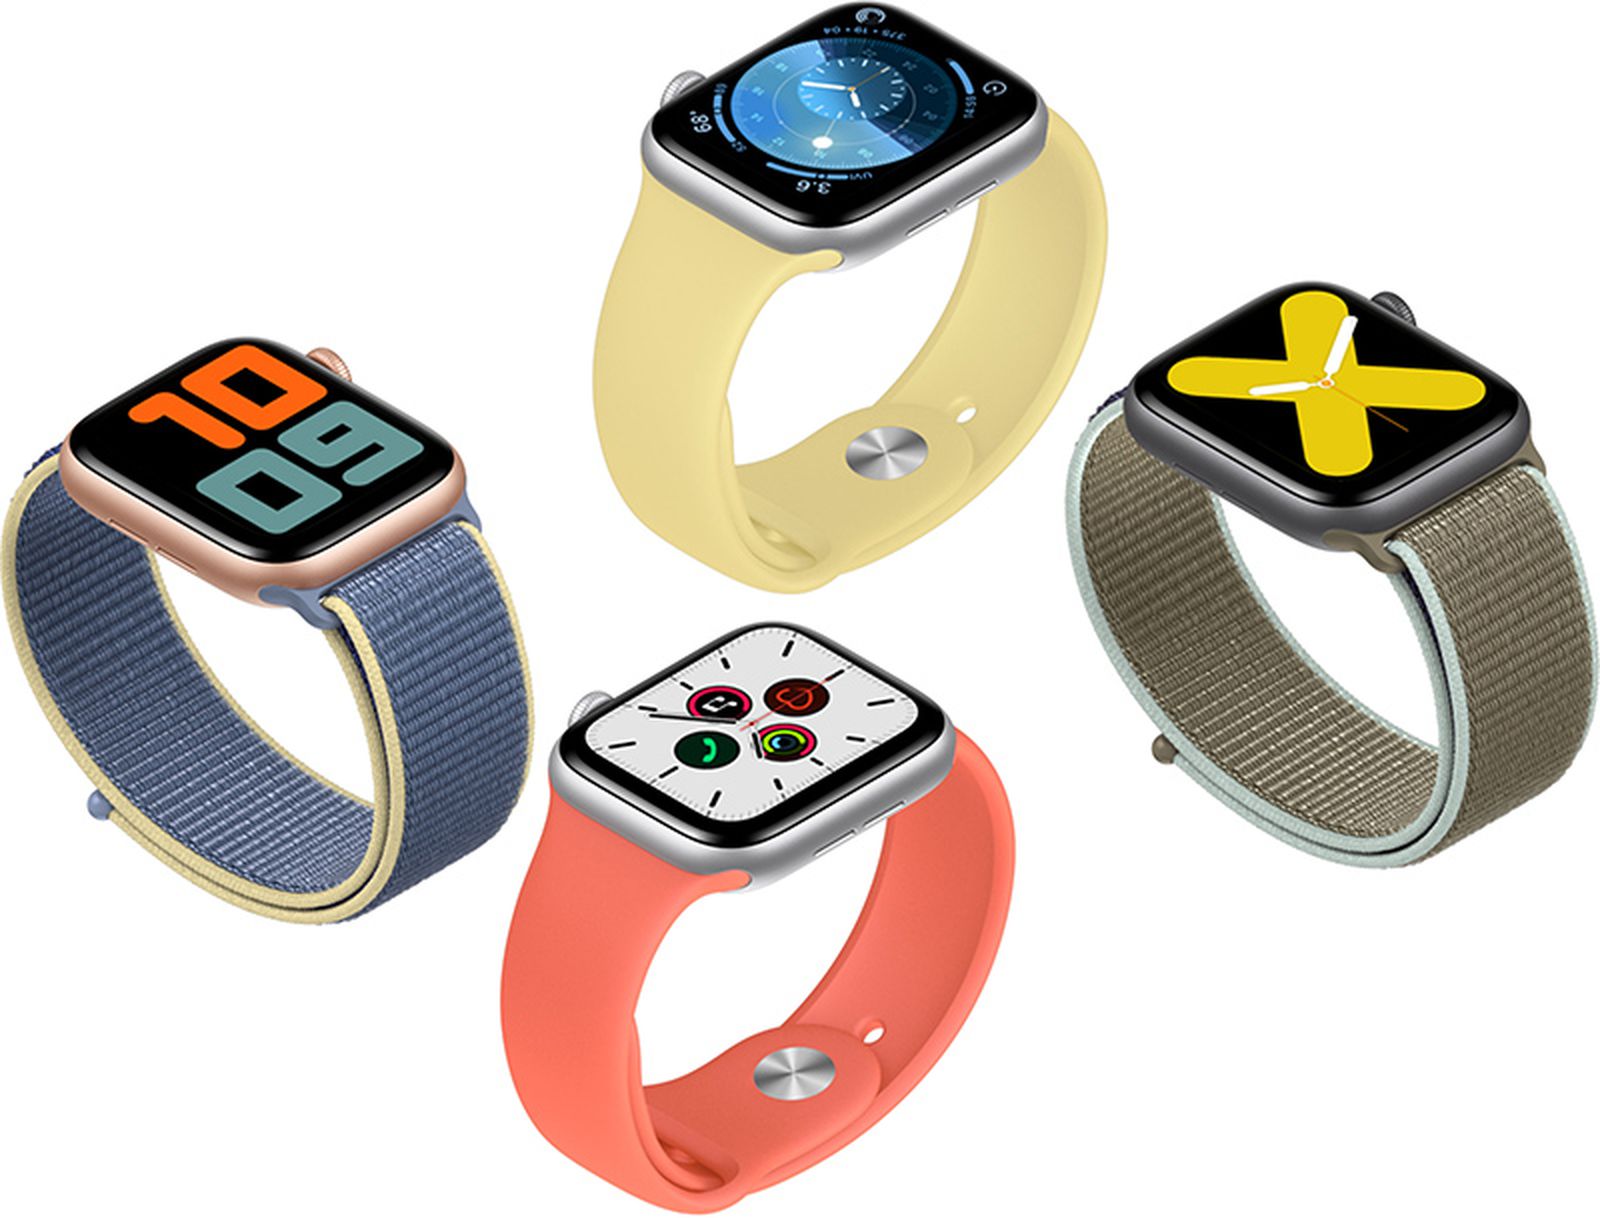 Tani Apple Watch pojawi się w 2020 roku? Czas na nowe zegarki Apple